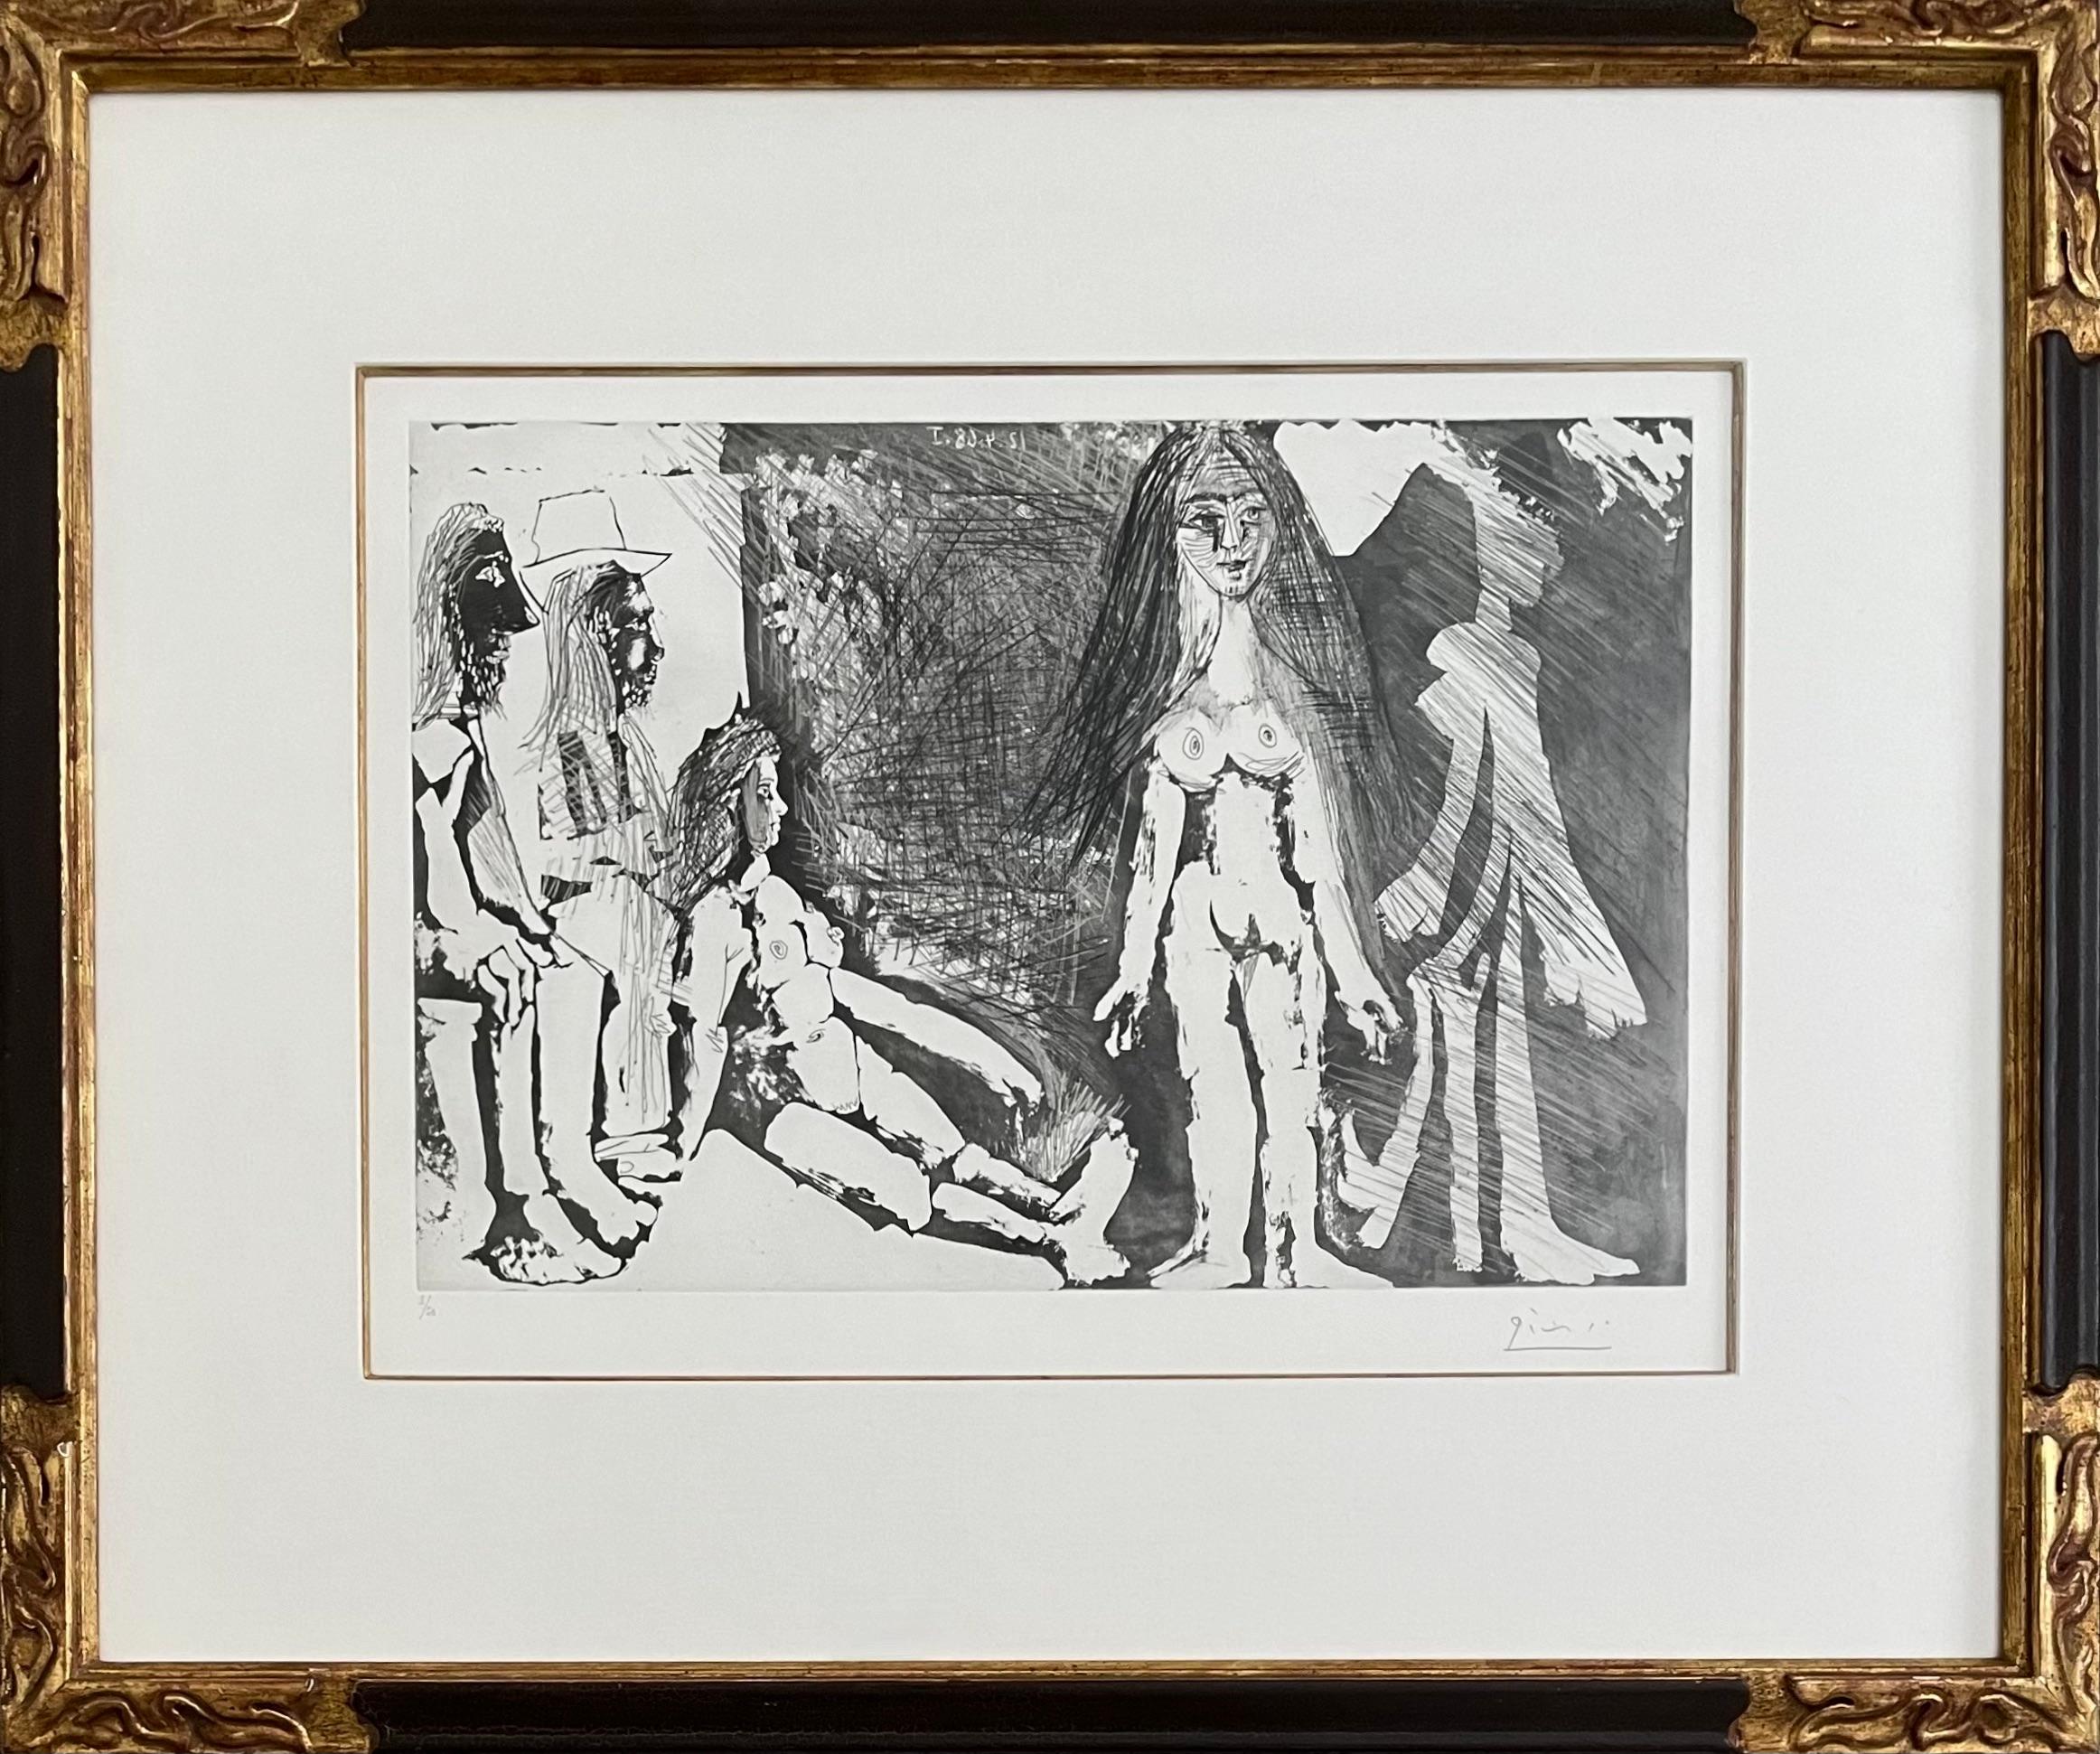 Artist: Pablo Picasso (1881-1973)
Title: Jeune fille regardée par une vielle femme et deux hommes dont un gitan
Year: 1968
Medium: Etching, aquatint and drypoint on Rives BFK paper
Size: 12.5 x 18.5 (plate); 17.75 x 24.25 inches (paper); 20.25 x